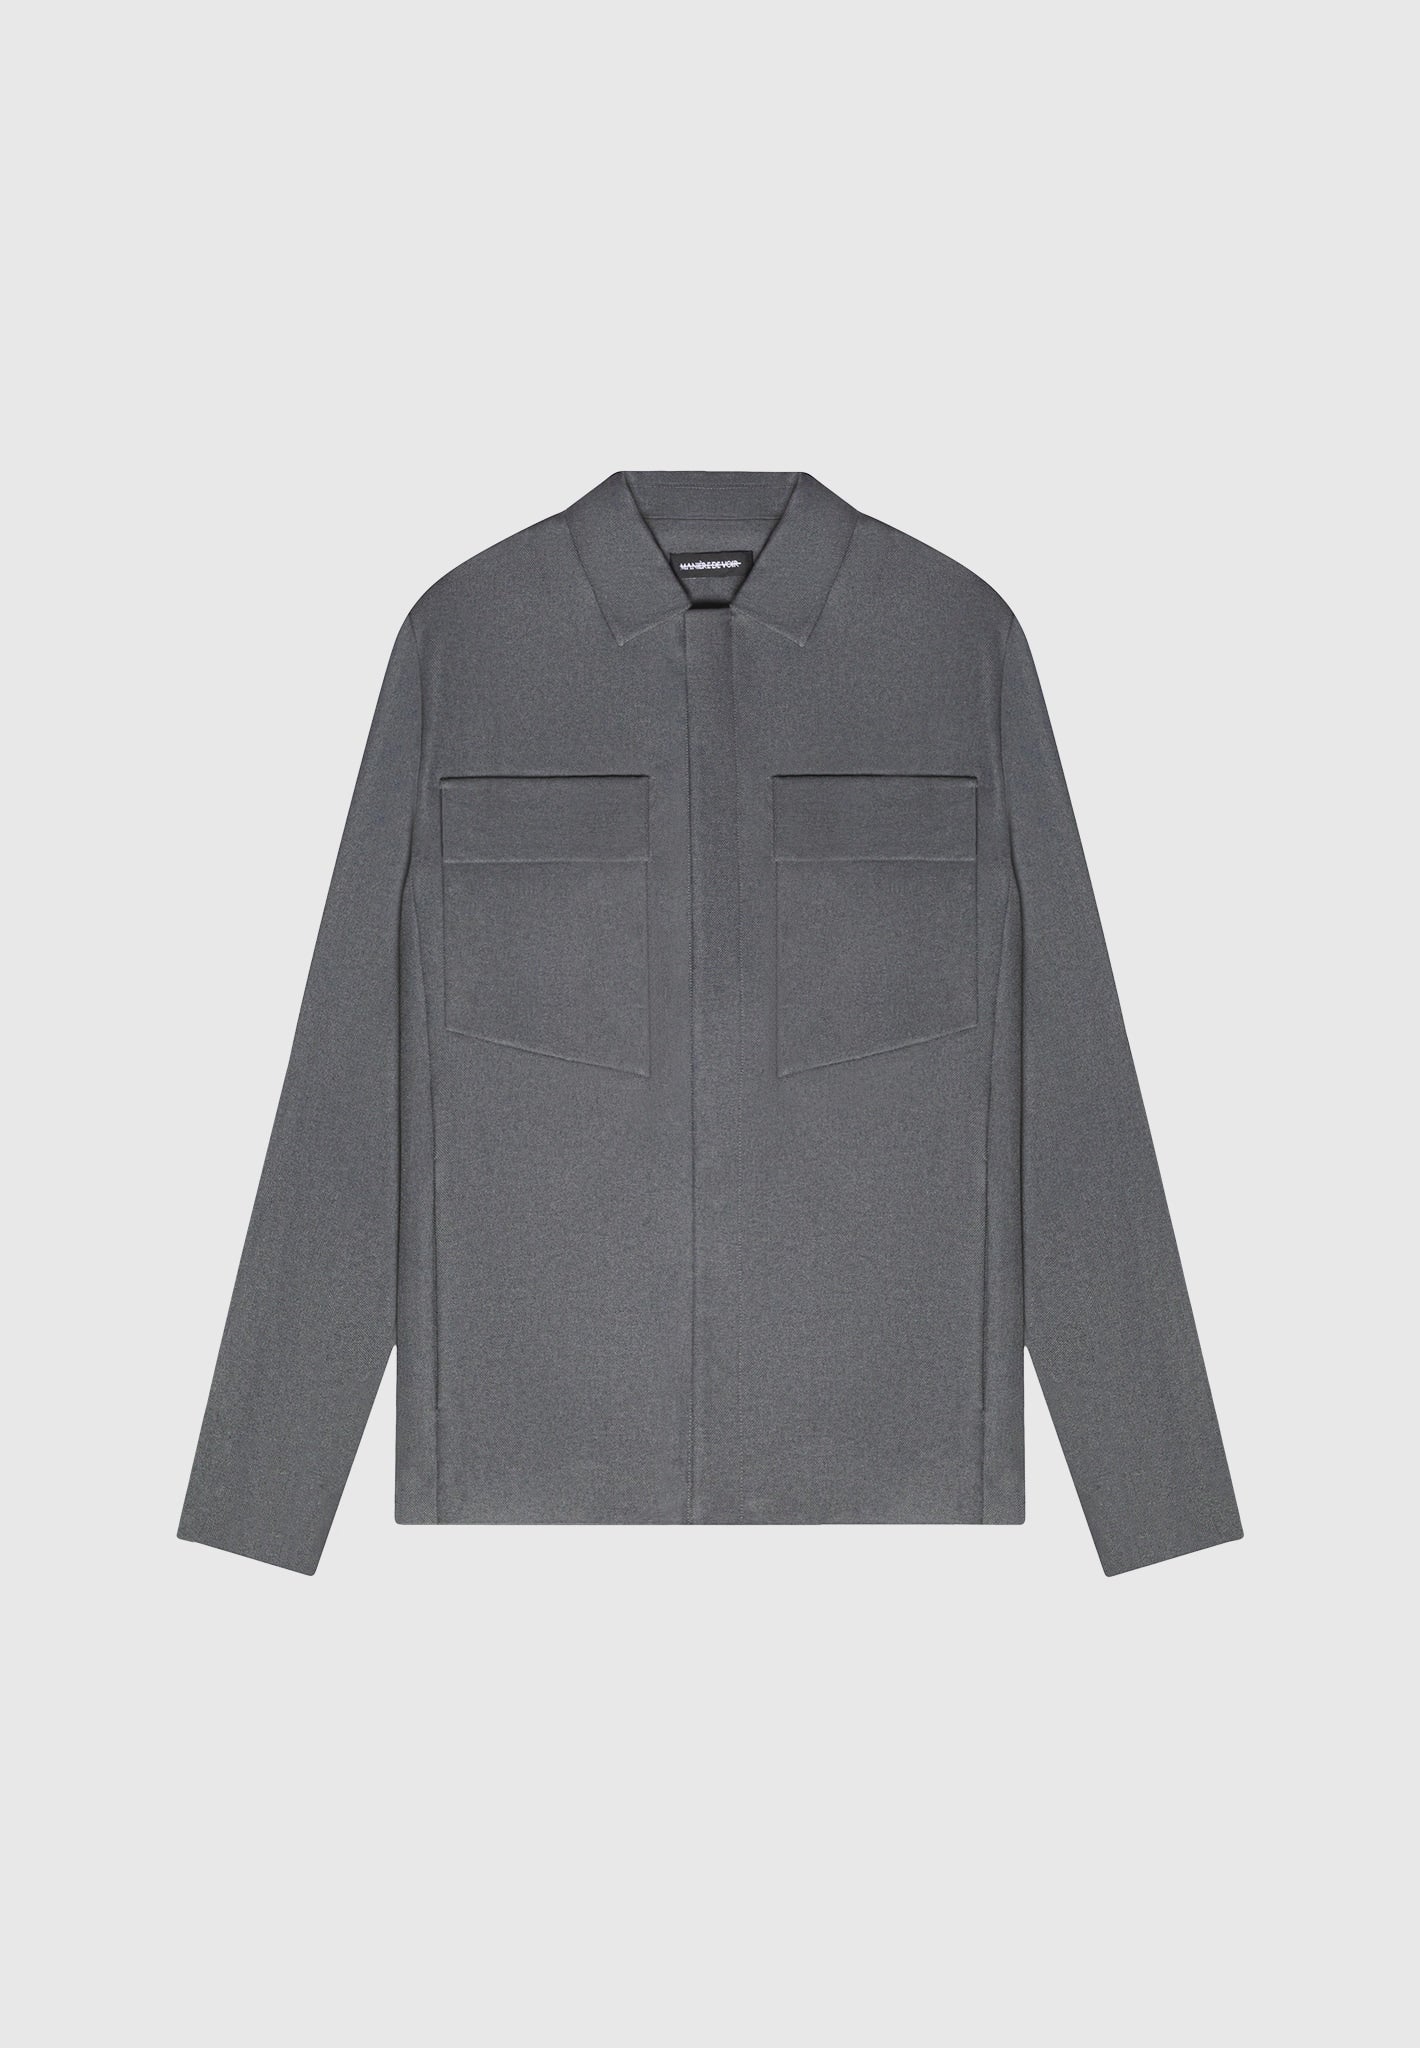 Pocket angulaire Overshirt - Gray Marl